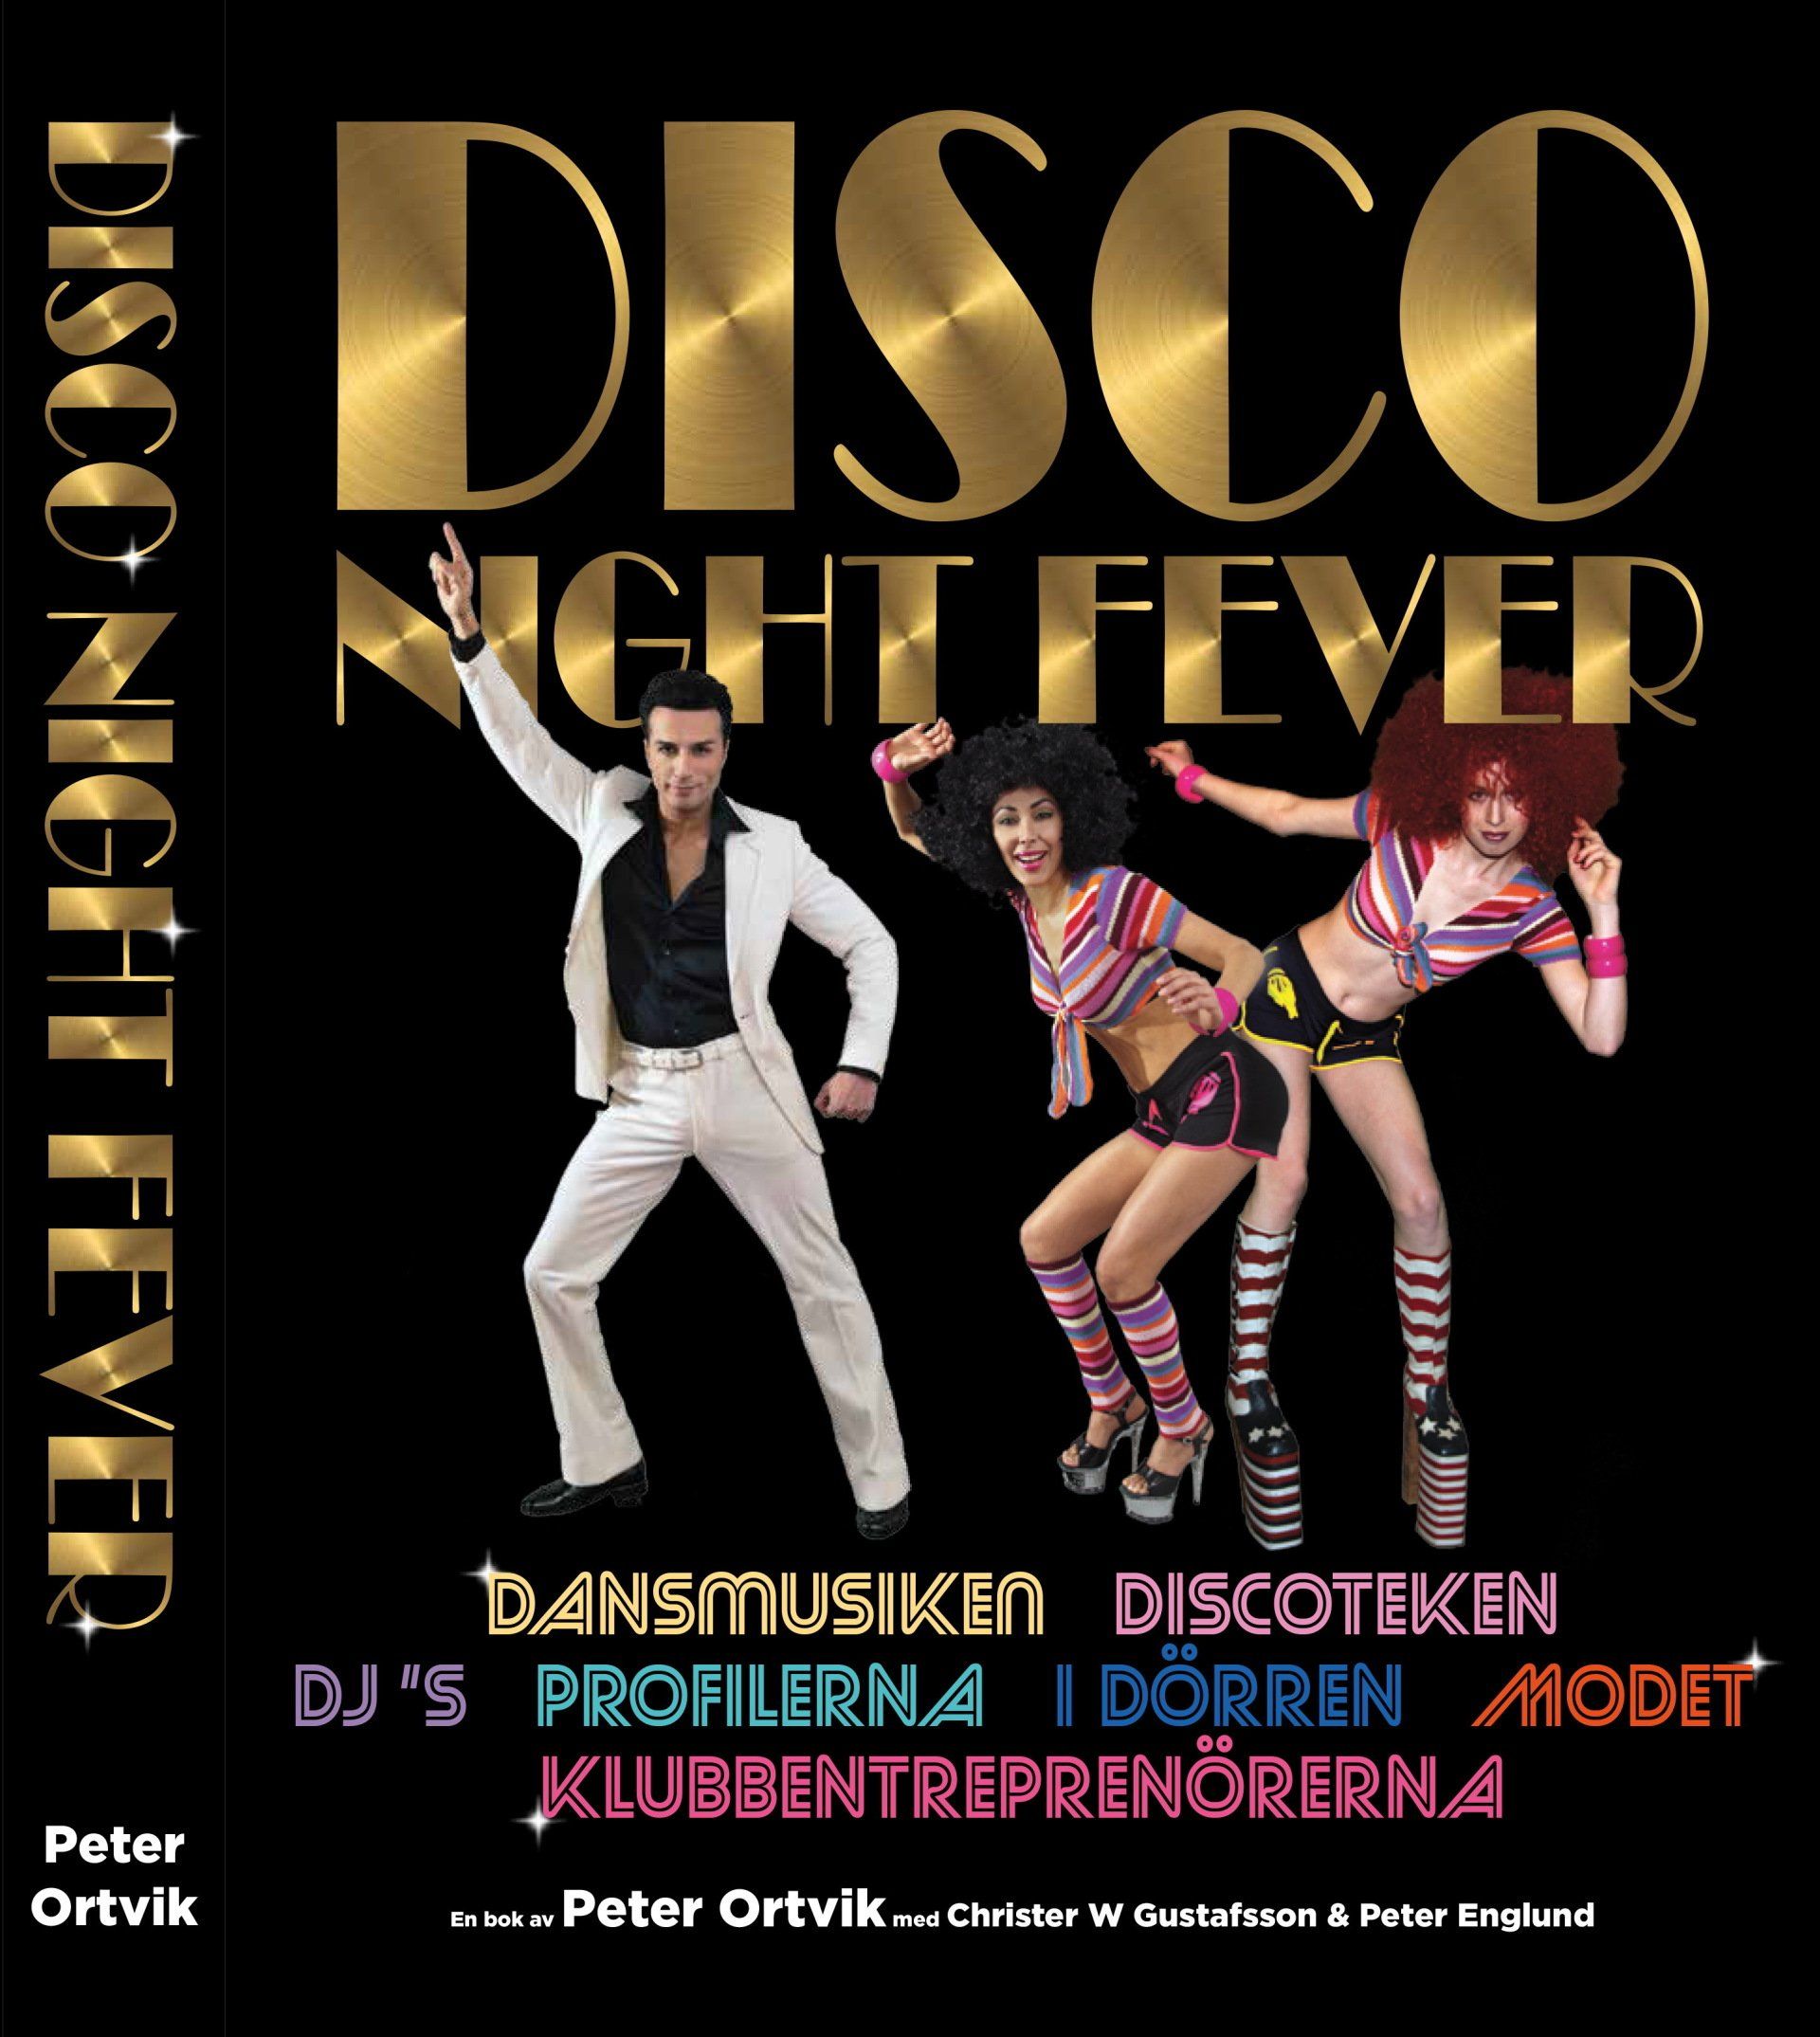 Faktaboken Disco Night Fever är skriven av Peter Ortvik på Stevali Bokförlag.